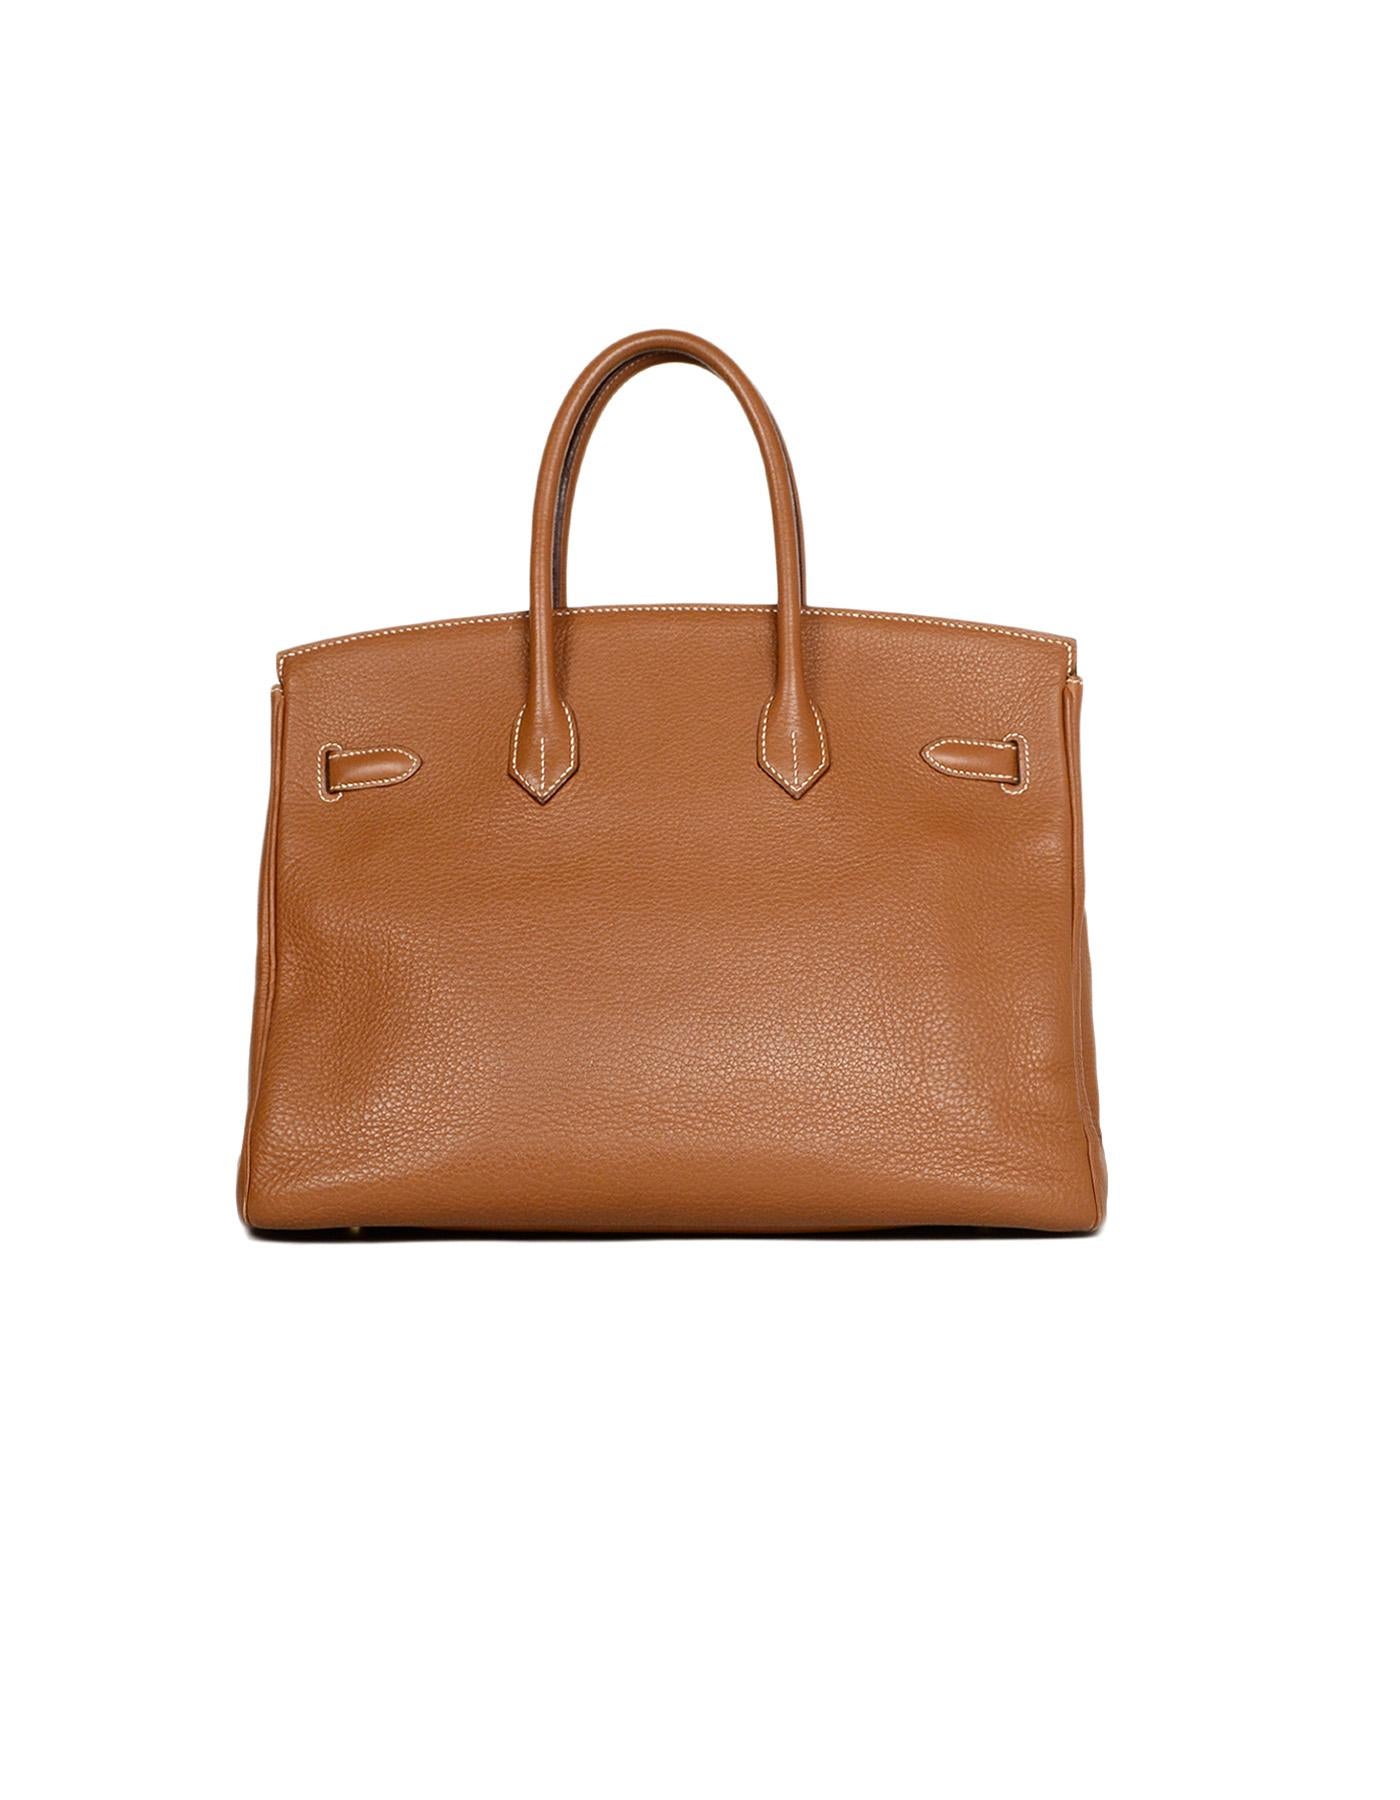 Brown Hermes Togo Leather Tan Gold 35cm Birkin Bag GHW